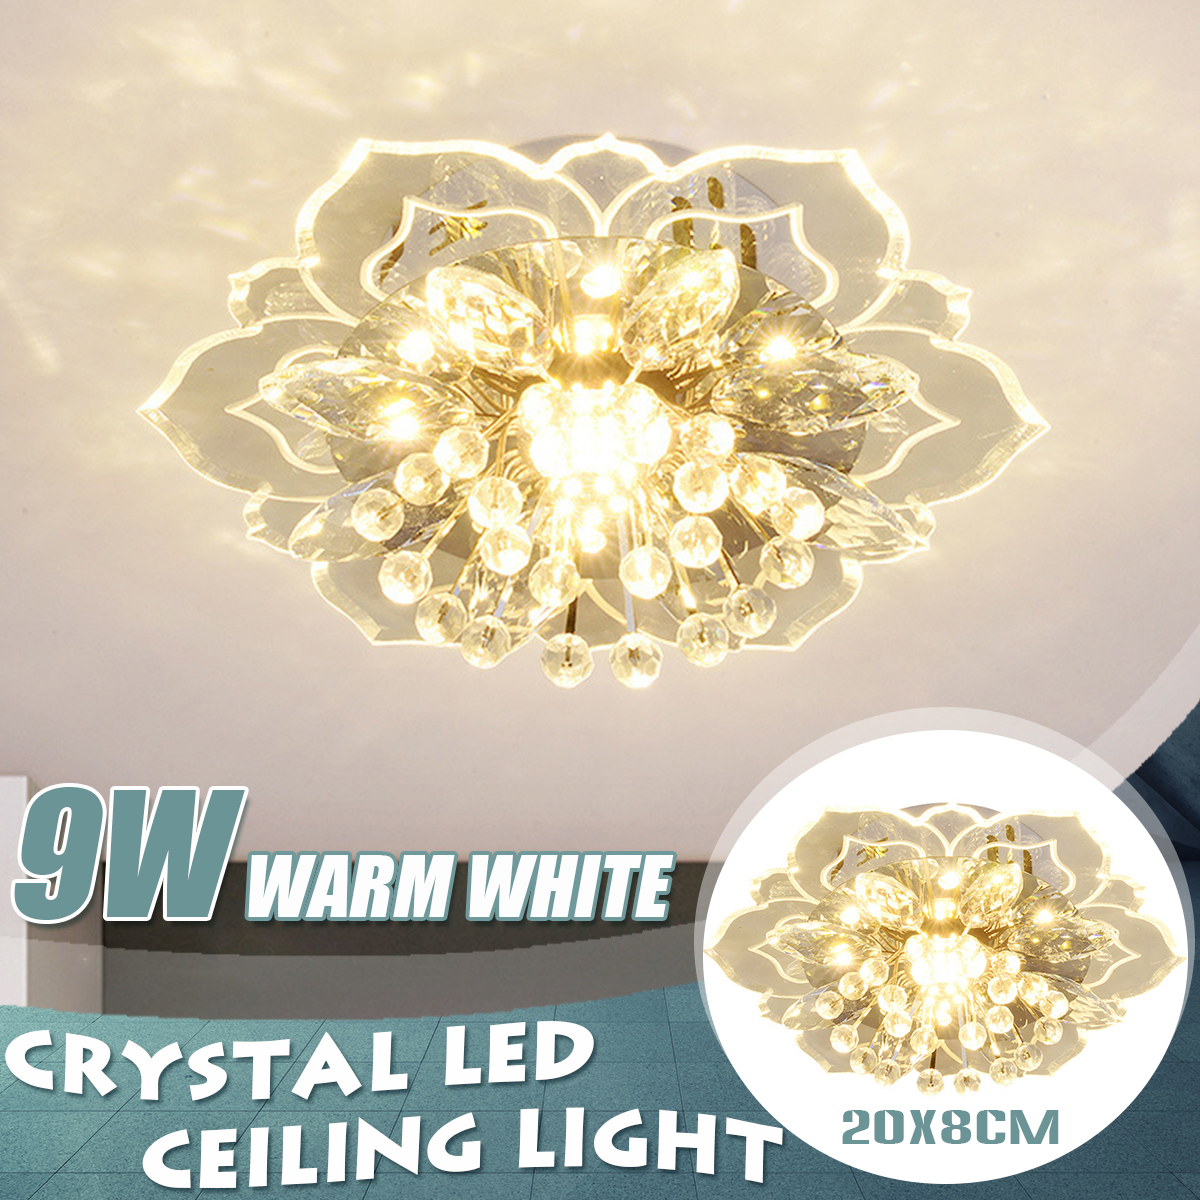 220V-Crystal-LED-Ceiling-Light-Fixture-Pendant-Modern-Lamp-Home-Room-Lighting-1768673-1